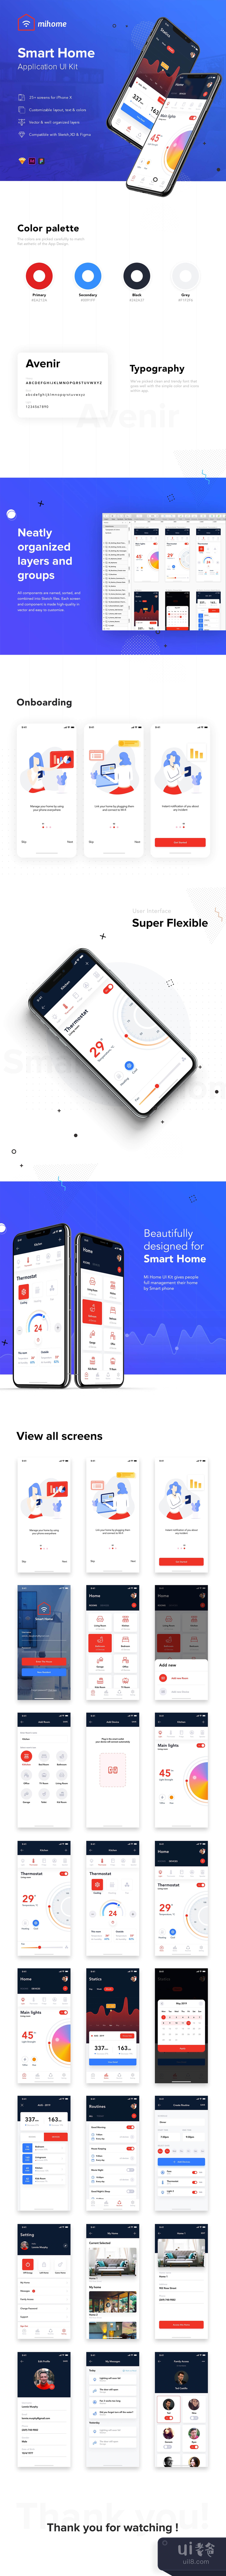 米家 - 智能家居UI套件 (Mi Home - Smart Home UI Kit)插图1